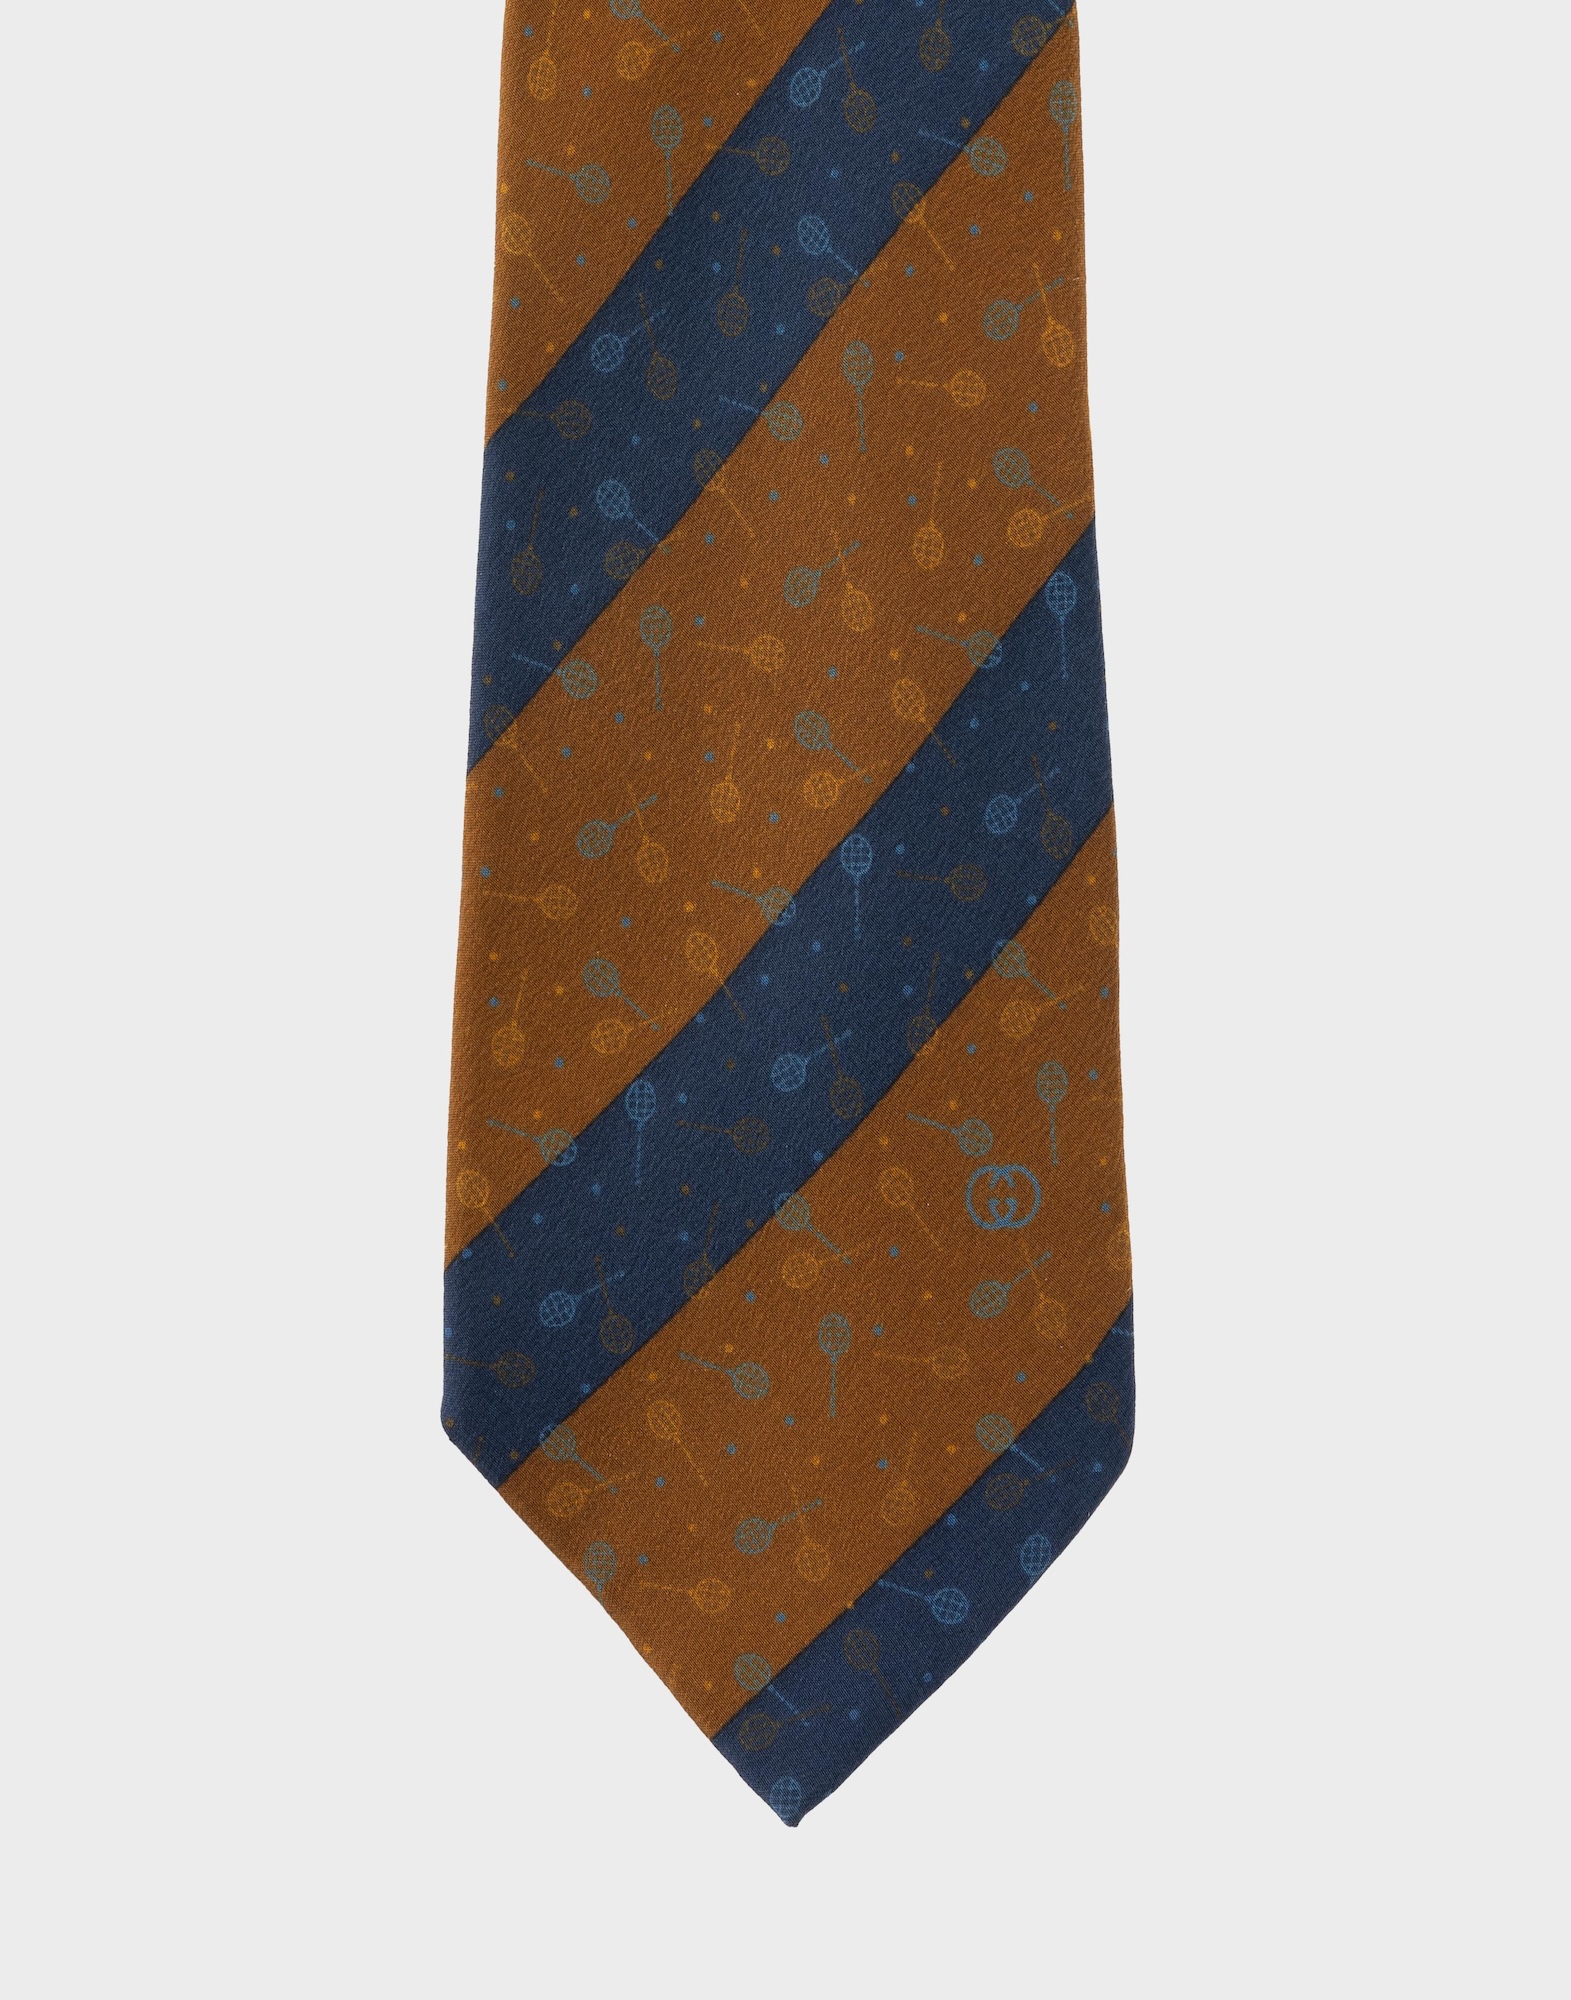 cravatta in seta da uomo con fantasia a righe diagonali marroni e blu, racchette da tennis